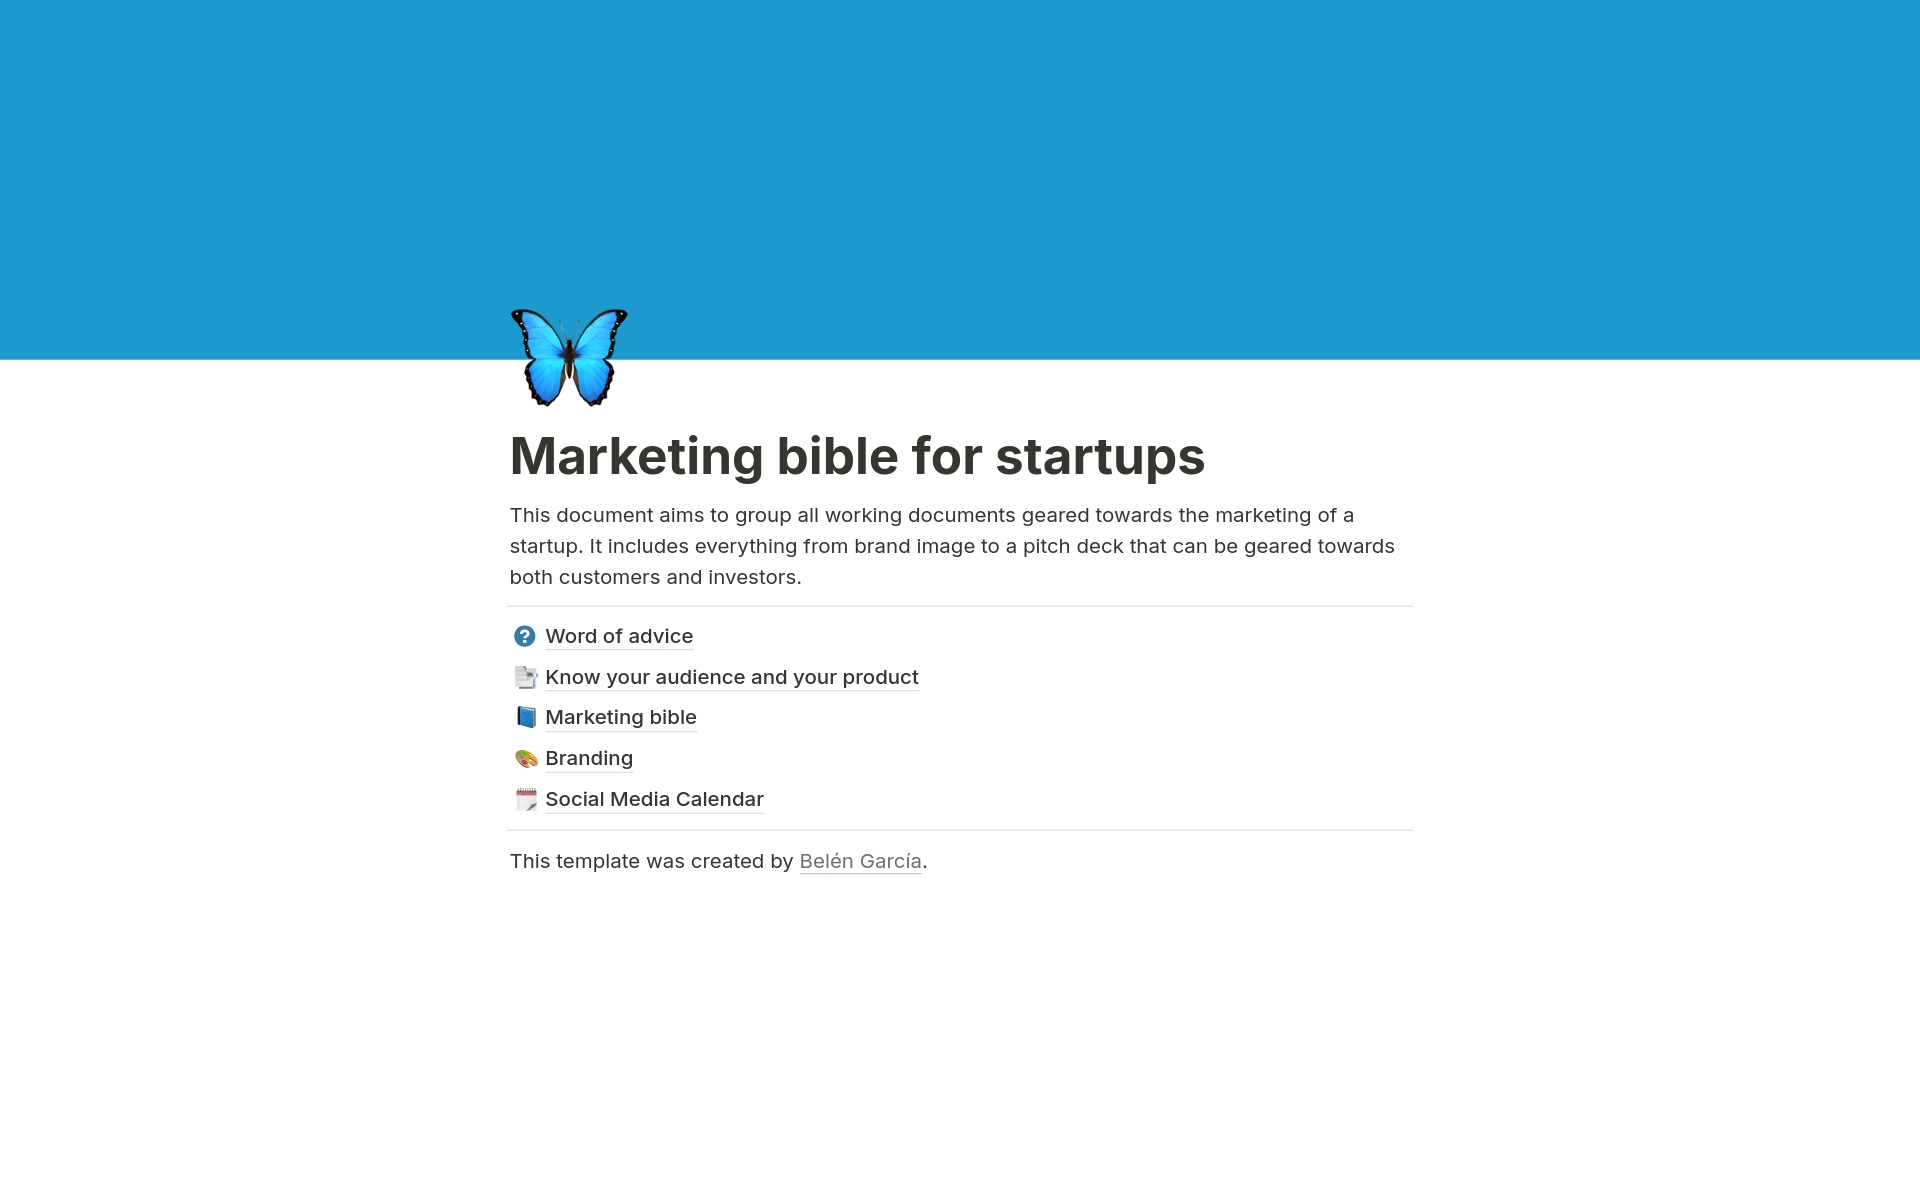 Uma prévia do modelo para Marketing bible for startups